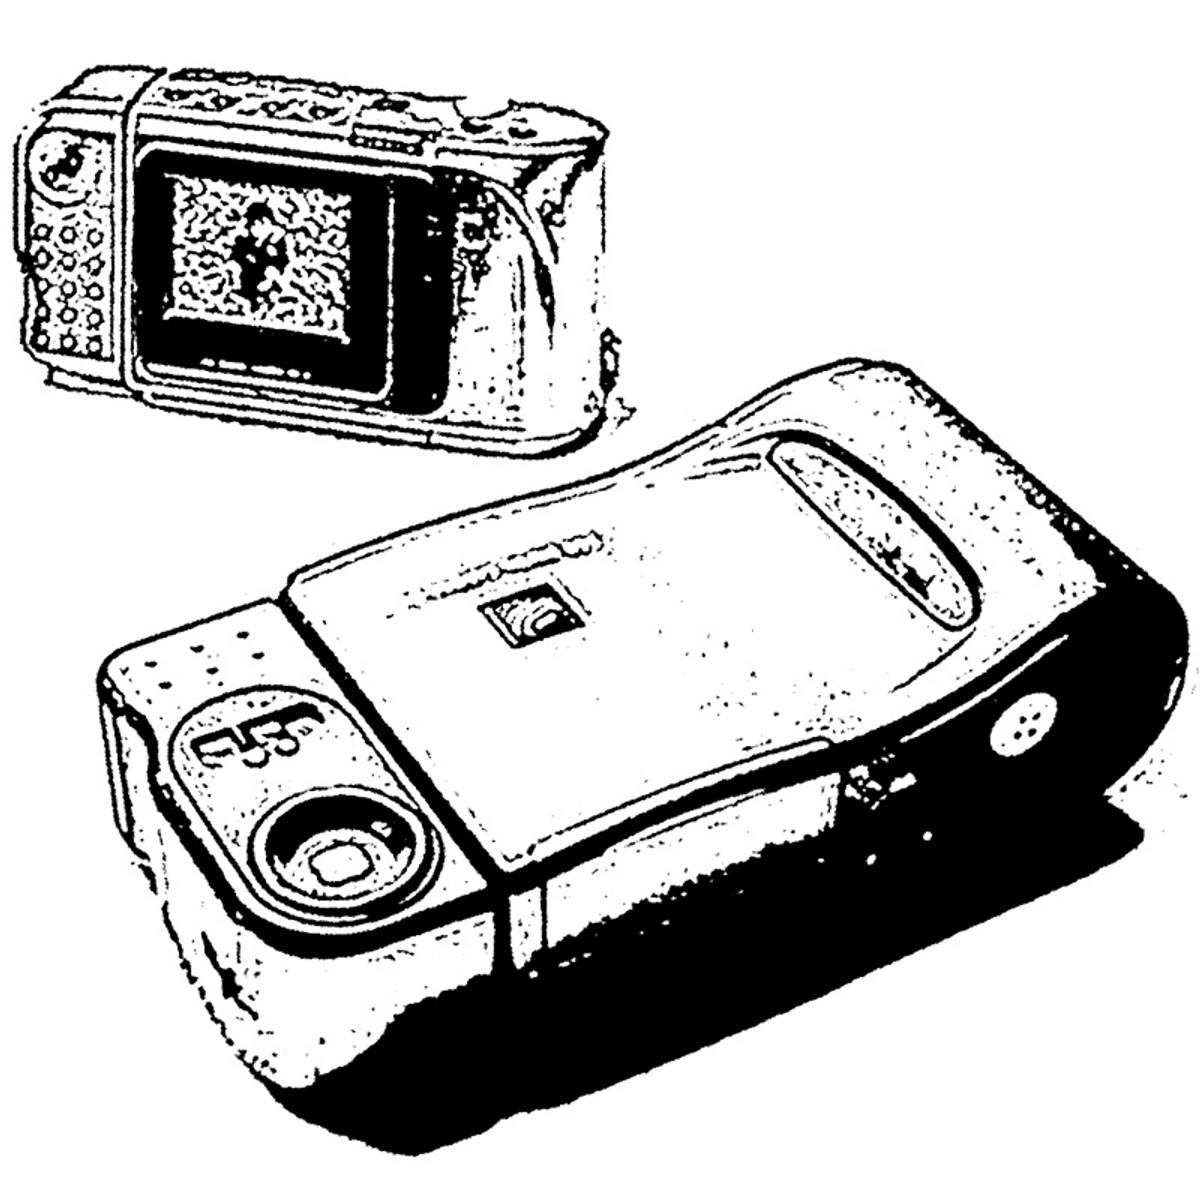 1994, premier appareil photo digital pour le grand public